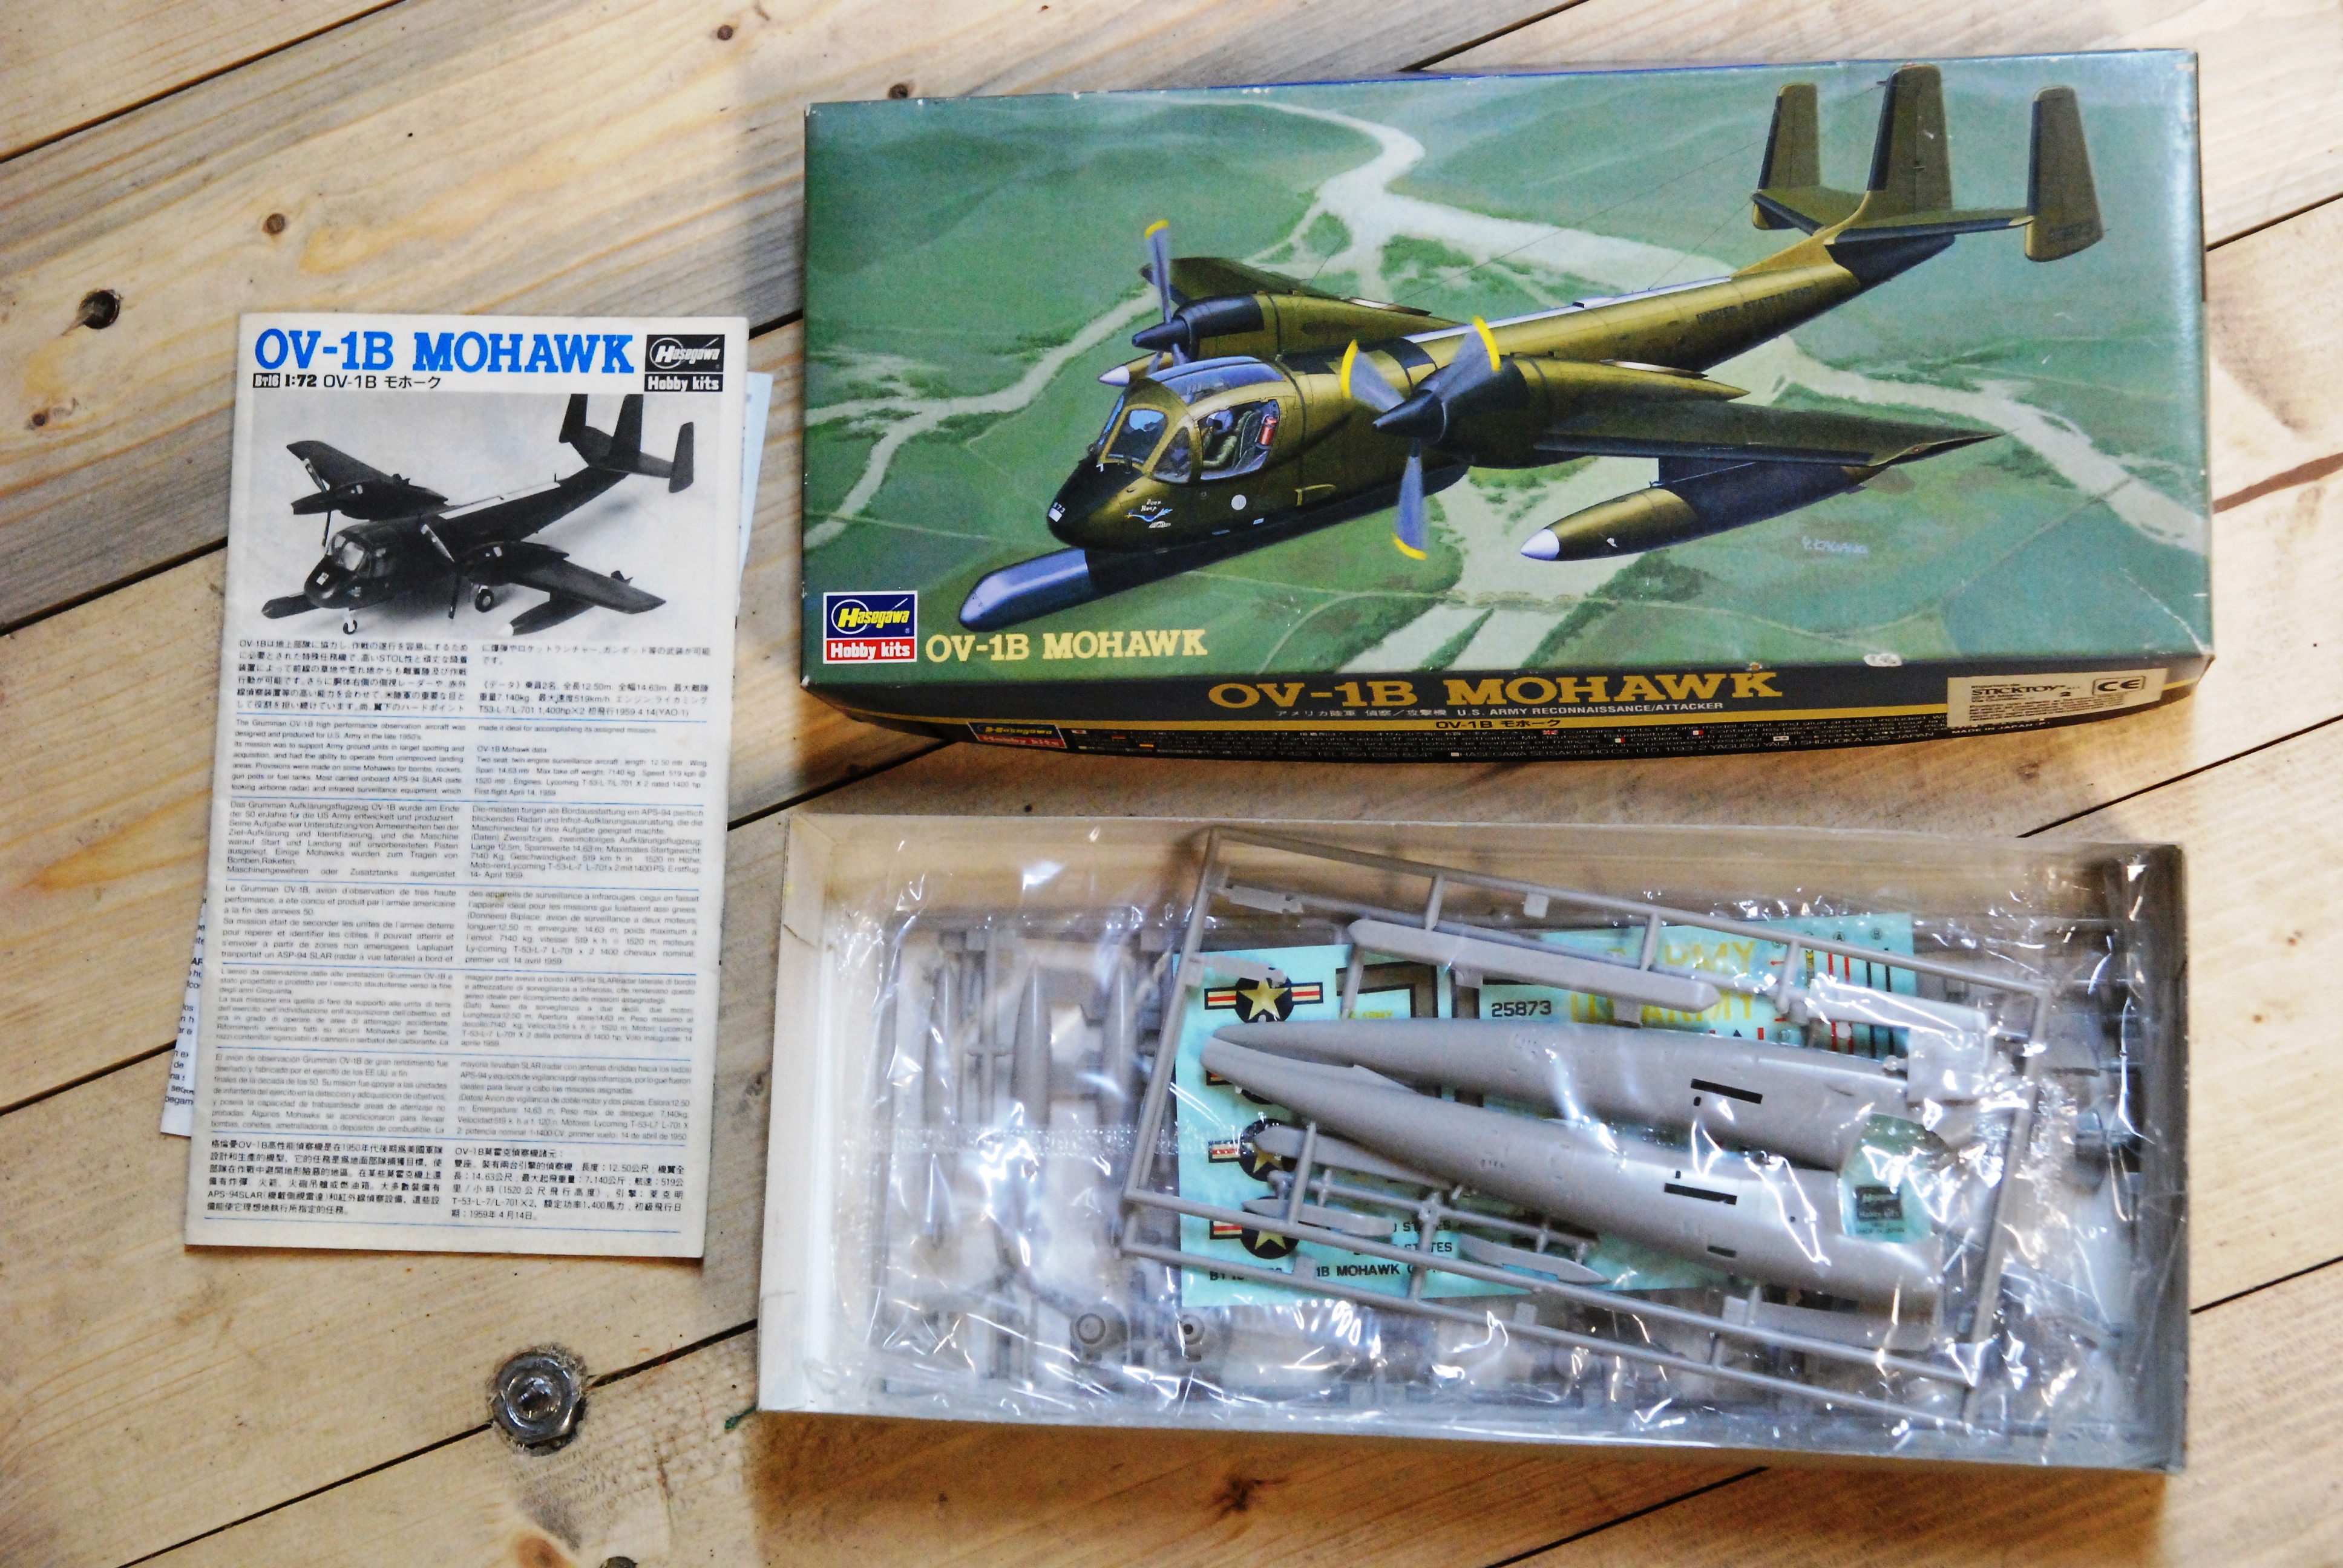 ov 1b mohawk hasegawa hobby kits NUOVO scala 1-72 by kit modellino aereo